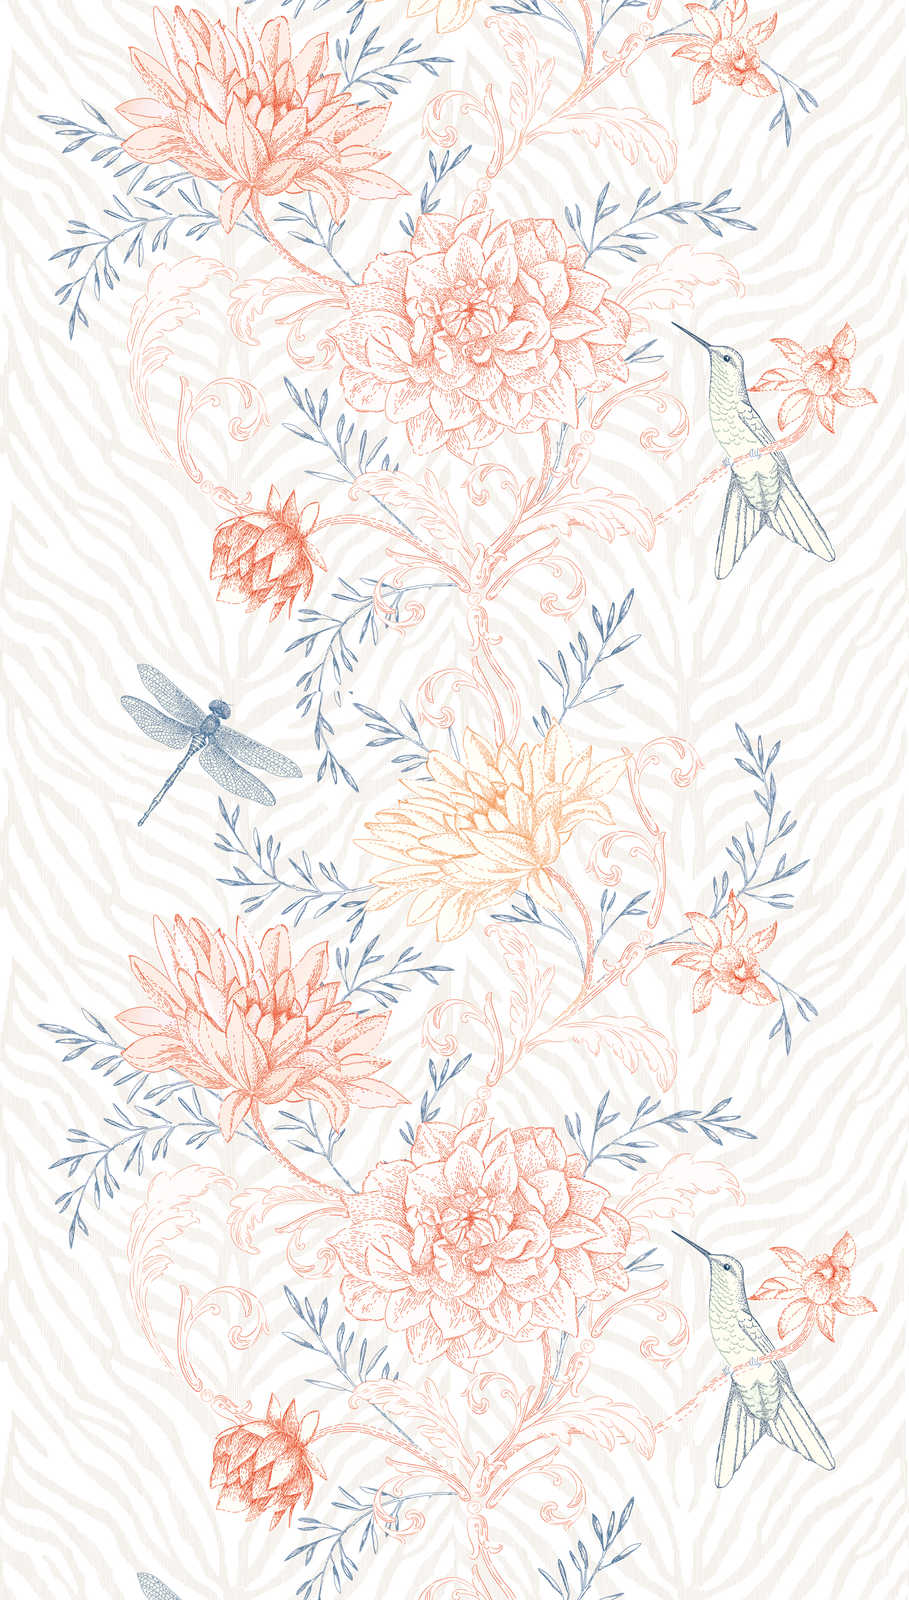             Papier peint fleuri lumineux avec oiseaux et libellules - multicolore, orange, bleu
        